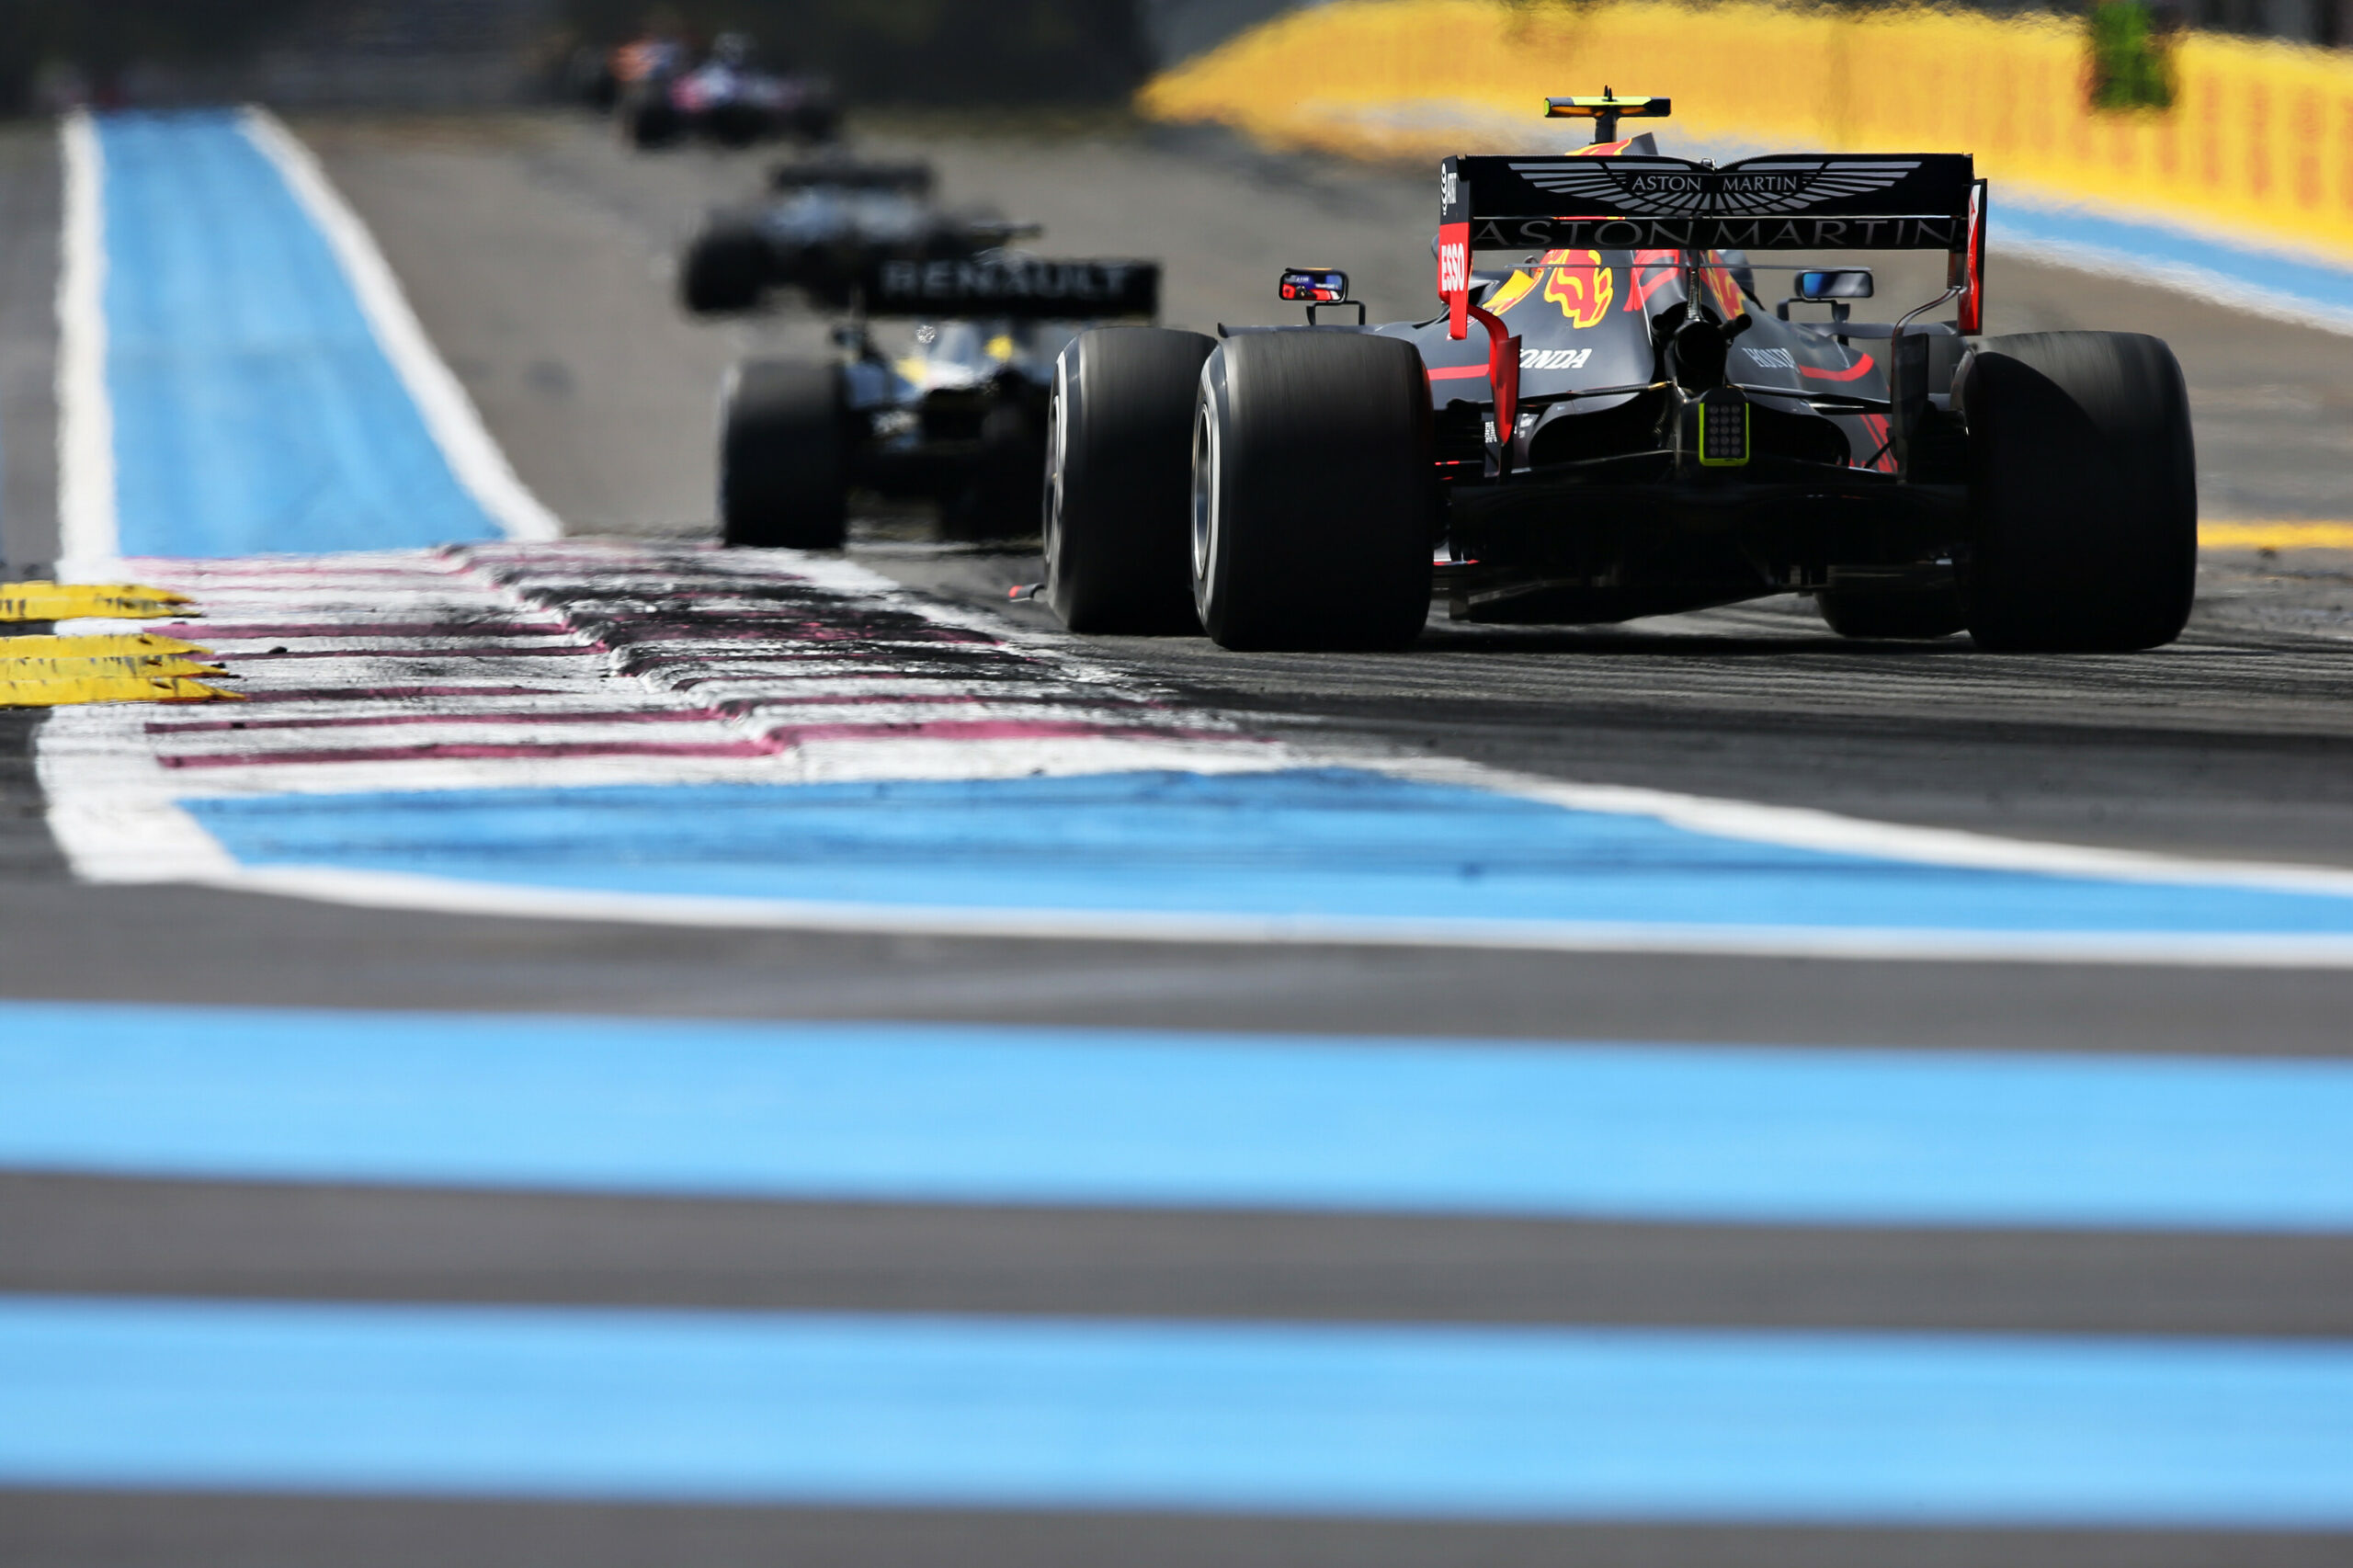 F1 - Pirelli propose la même gamme de pneus qu'en 2019 pour le GP de France